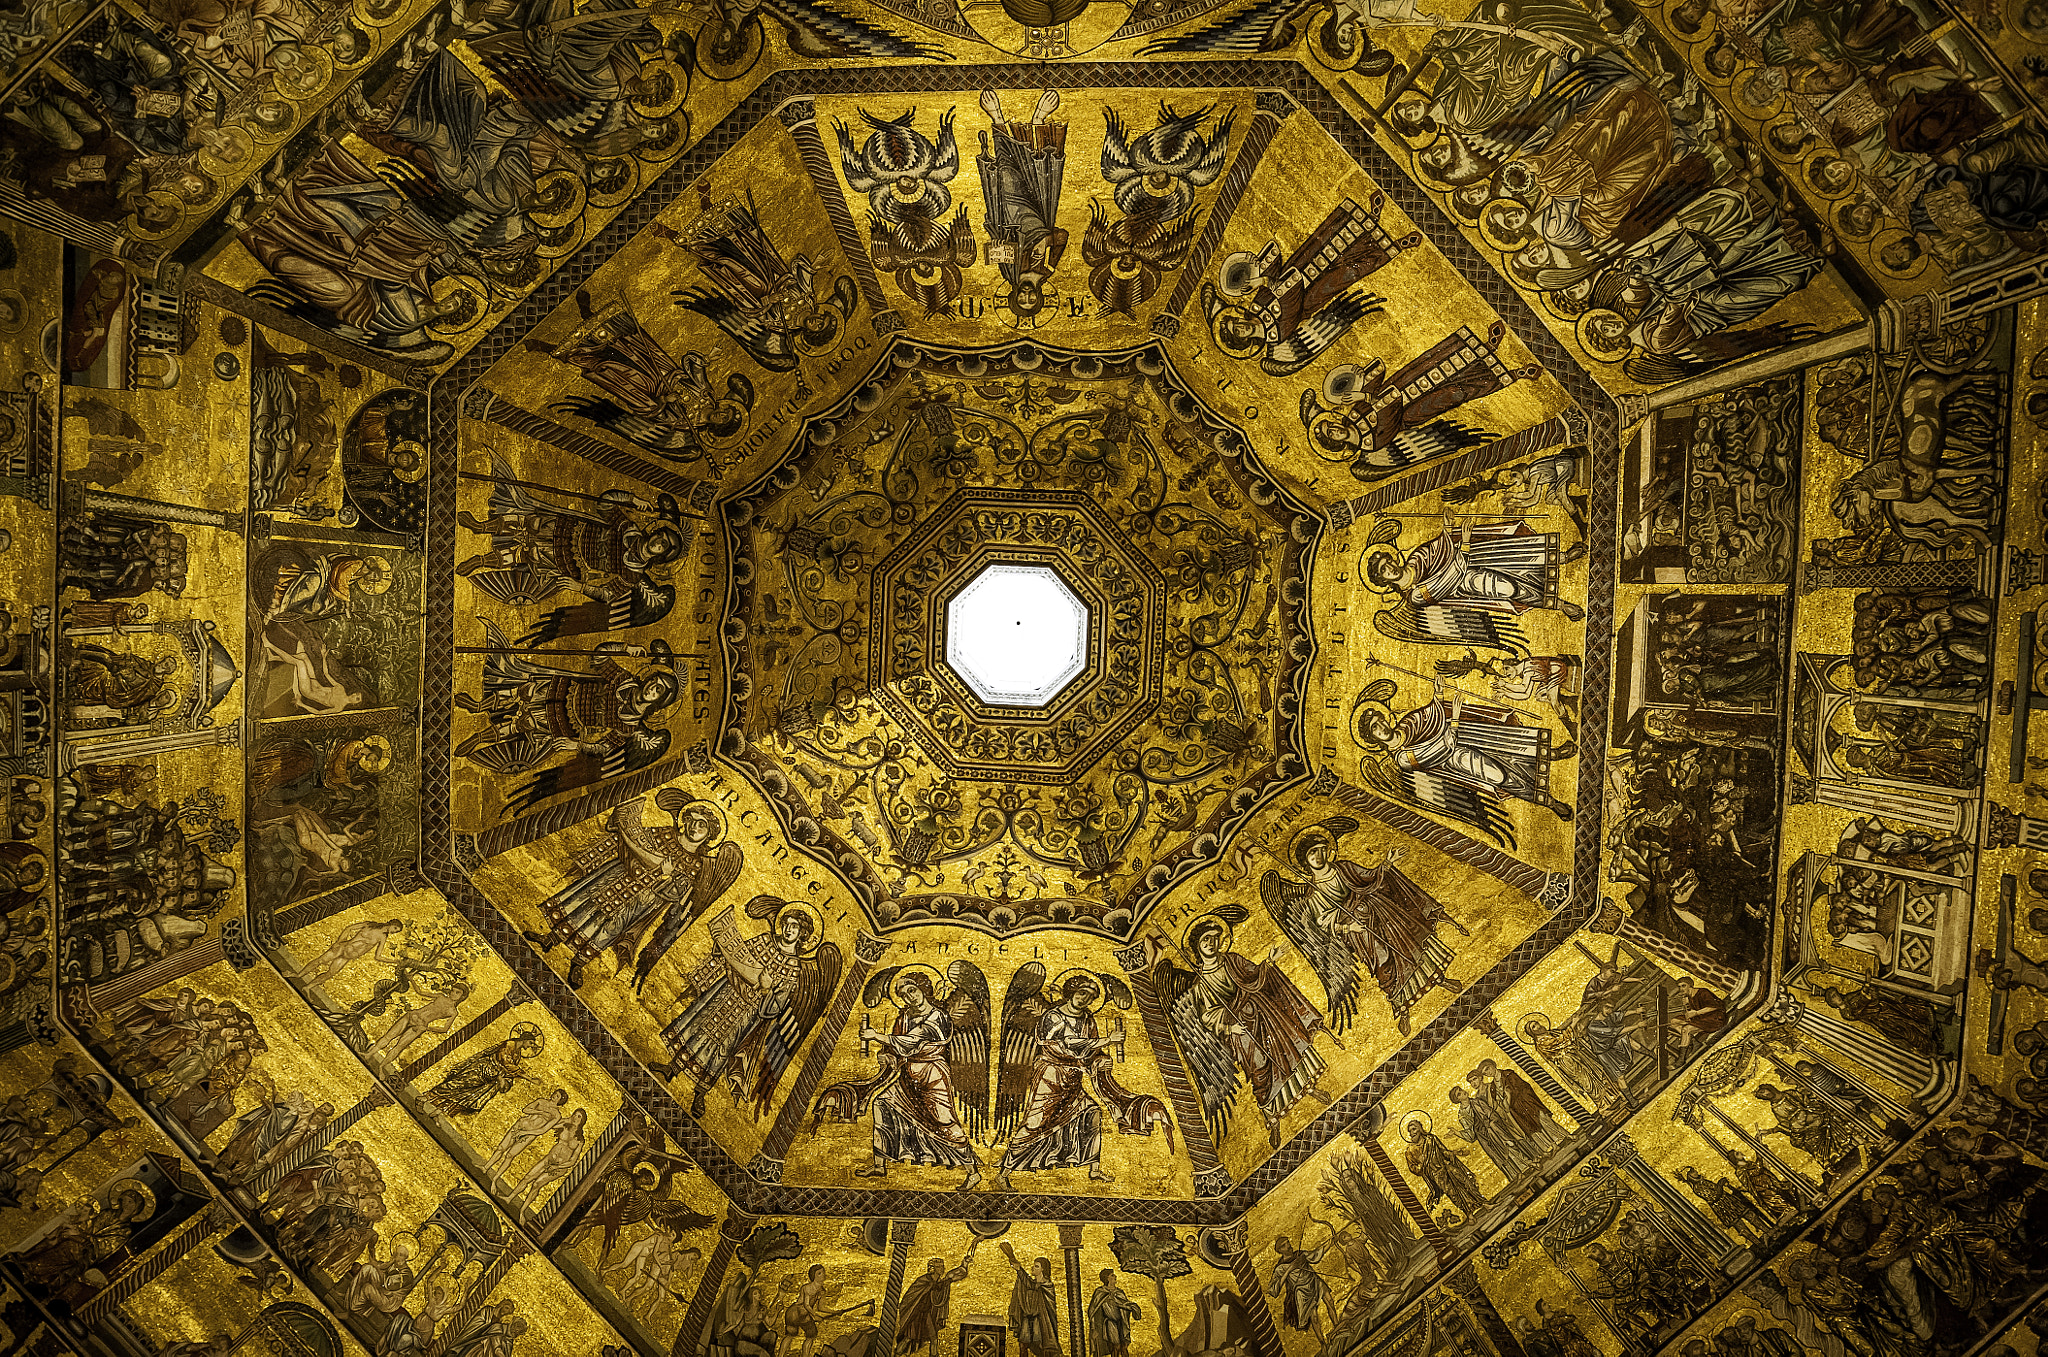 Nikon D700 sample photo. Baptistery ceiling photography